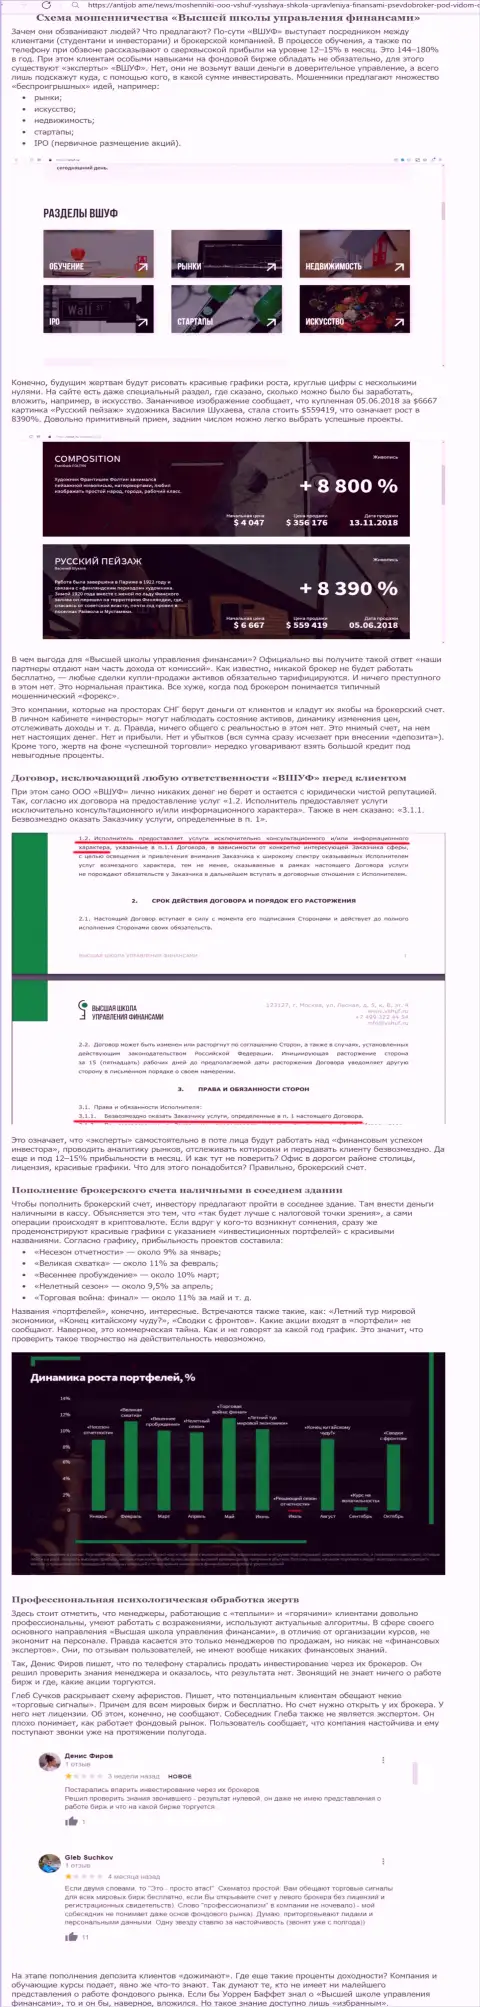 Обзор и отзывы о компании ООО ВШУФ - это МОШЕННИКИ !!!